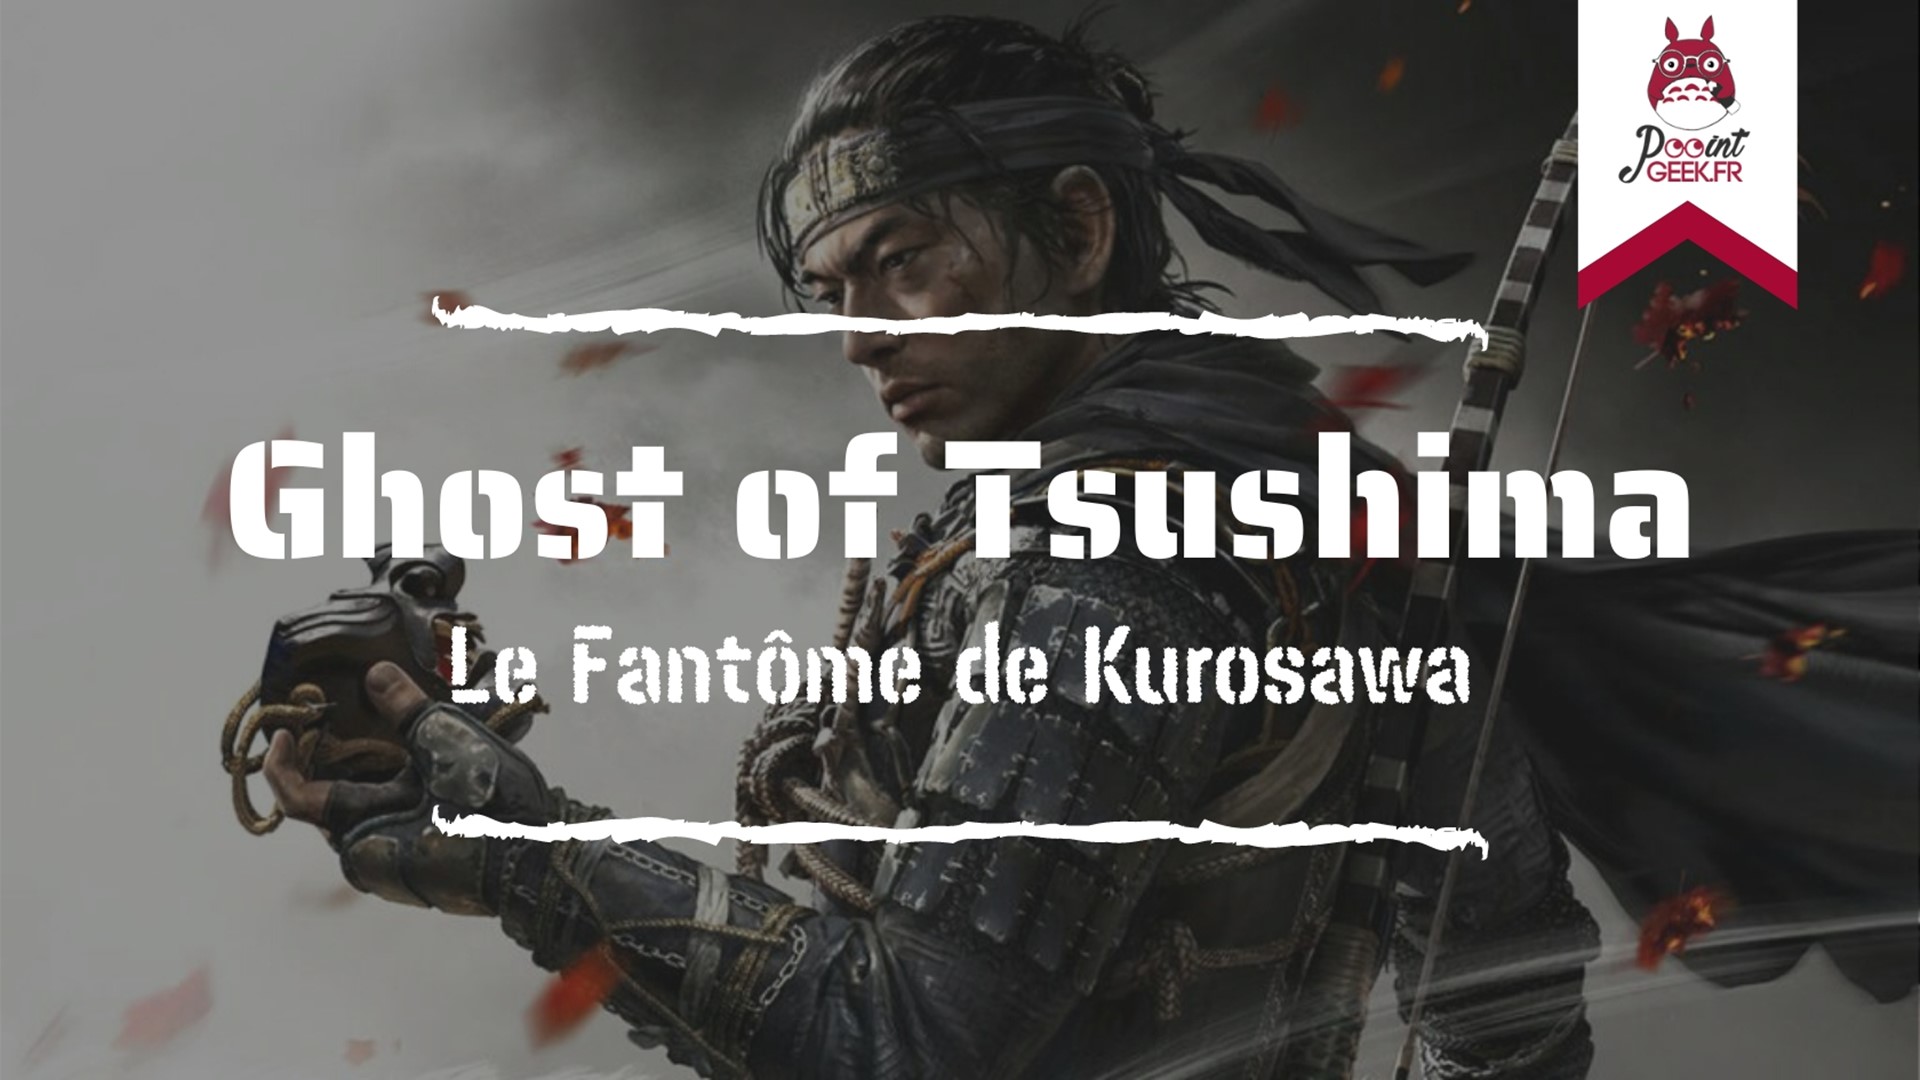 Ghost of Tsushima le fantôme de Kurosawa